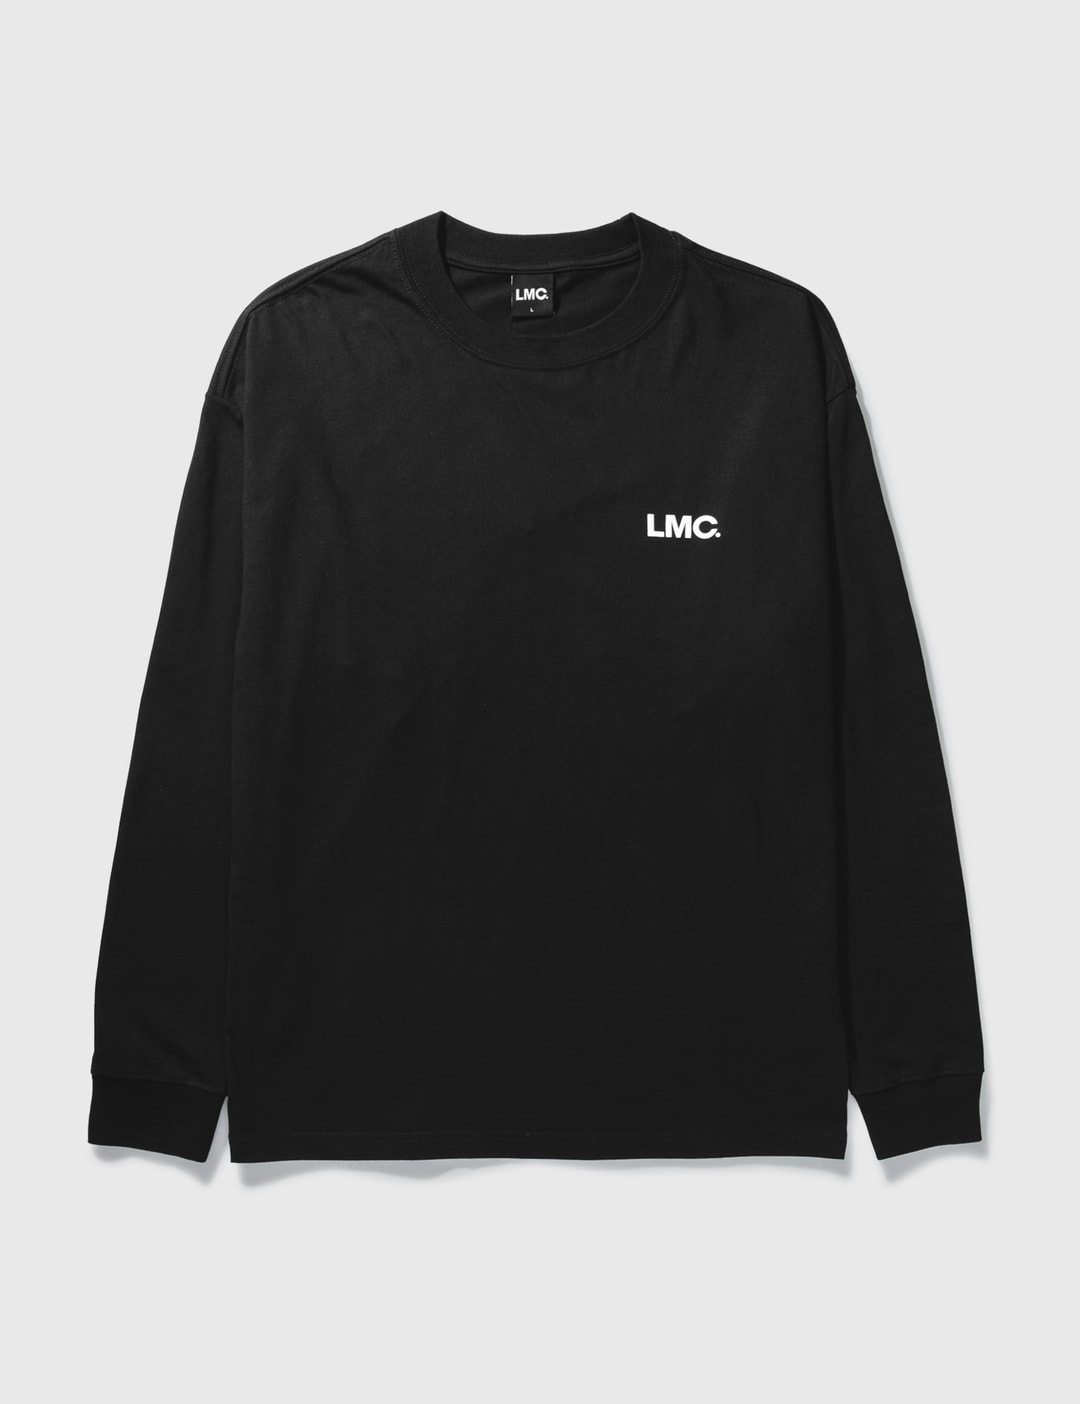 LMC - LMC Basic OG Long Sleeve T-shirt | HBX - Globally Curated Fashion ...